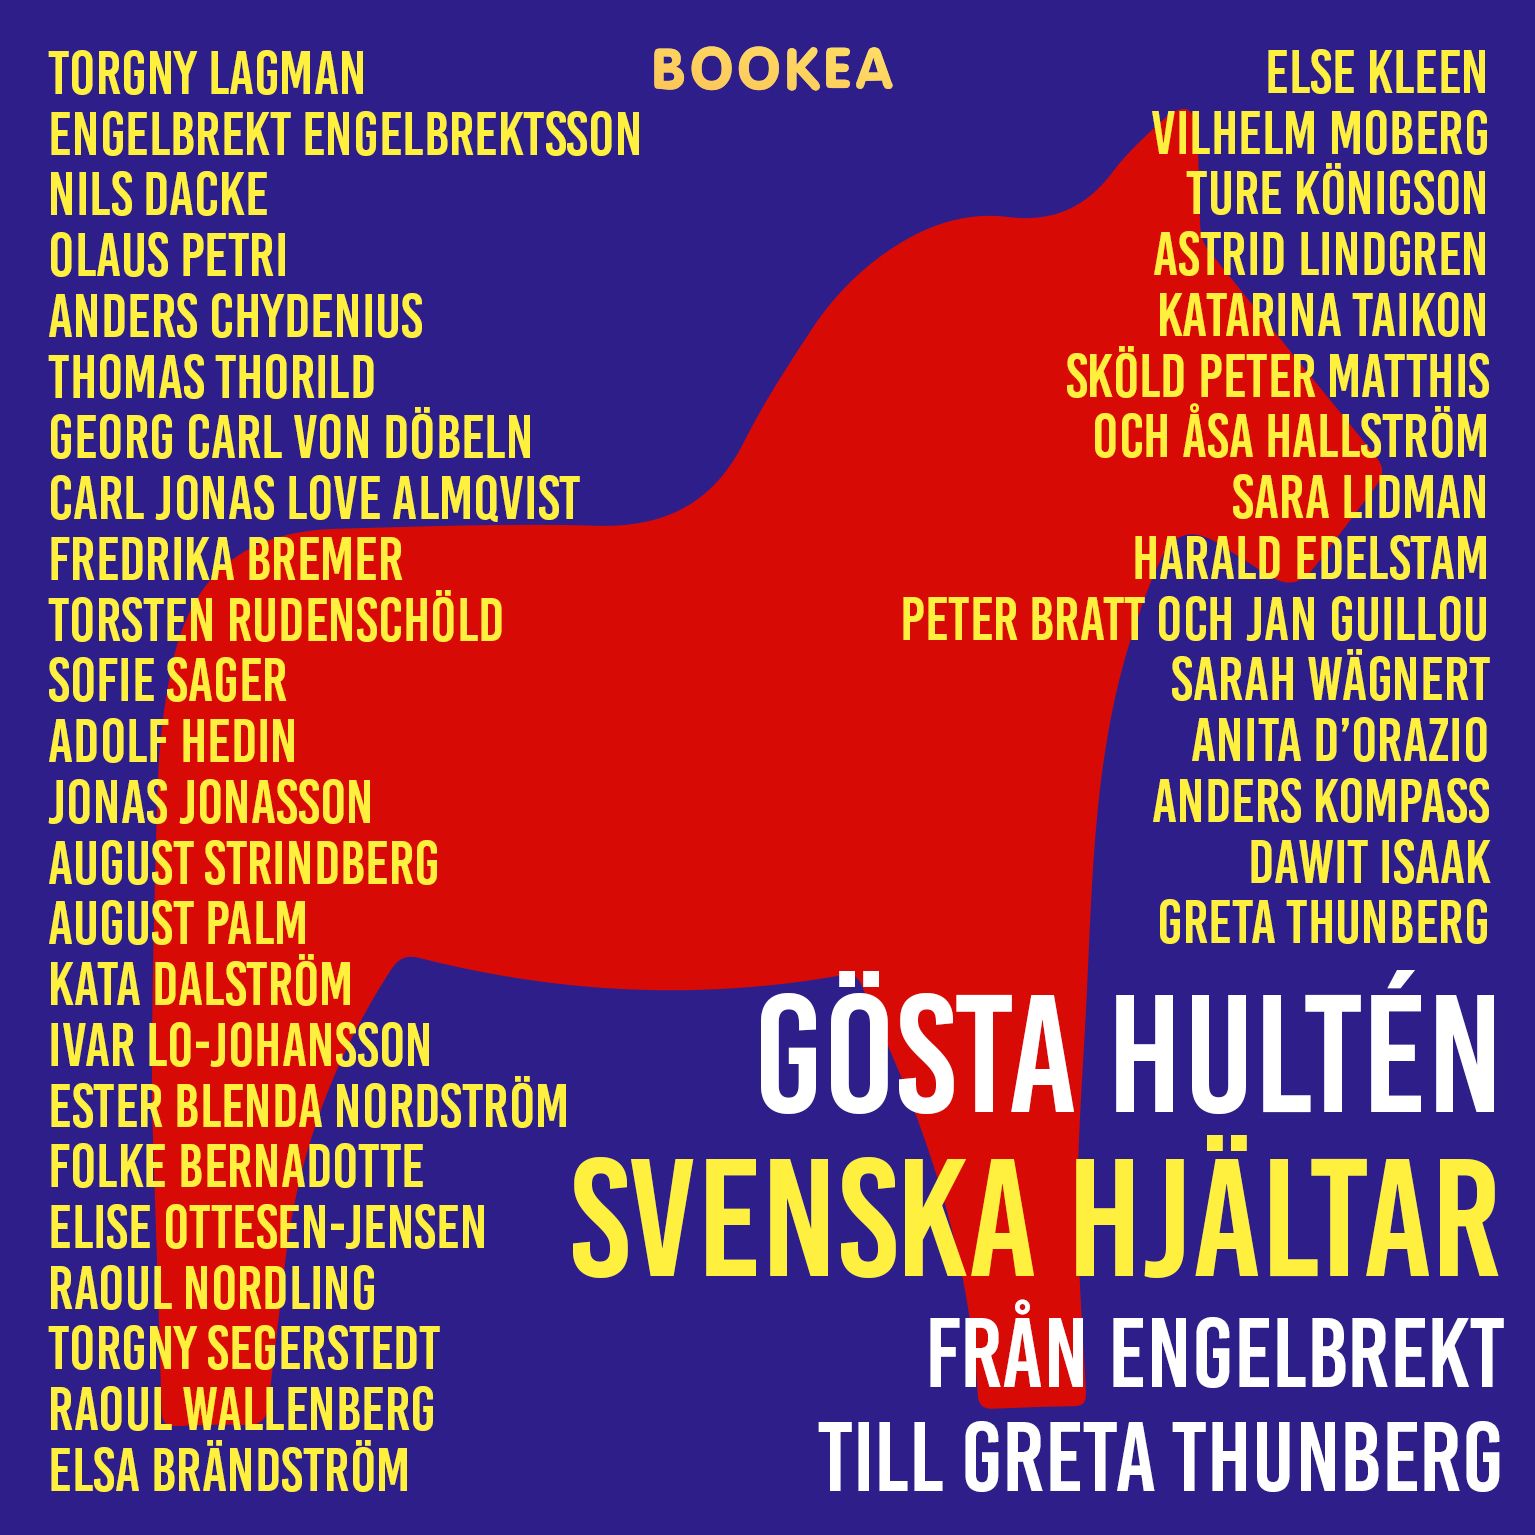 Svenska hjältar - från Engelbrekt till Greta Thunberg, audiobook by Gösta Hultén